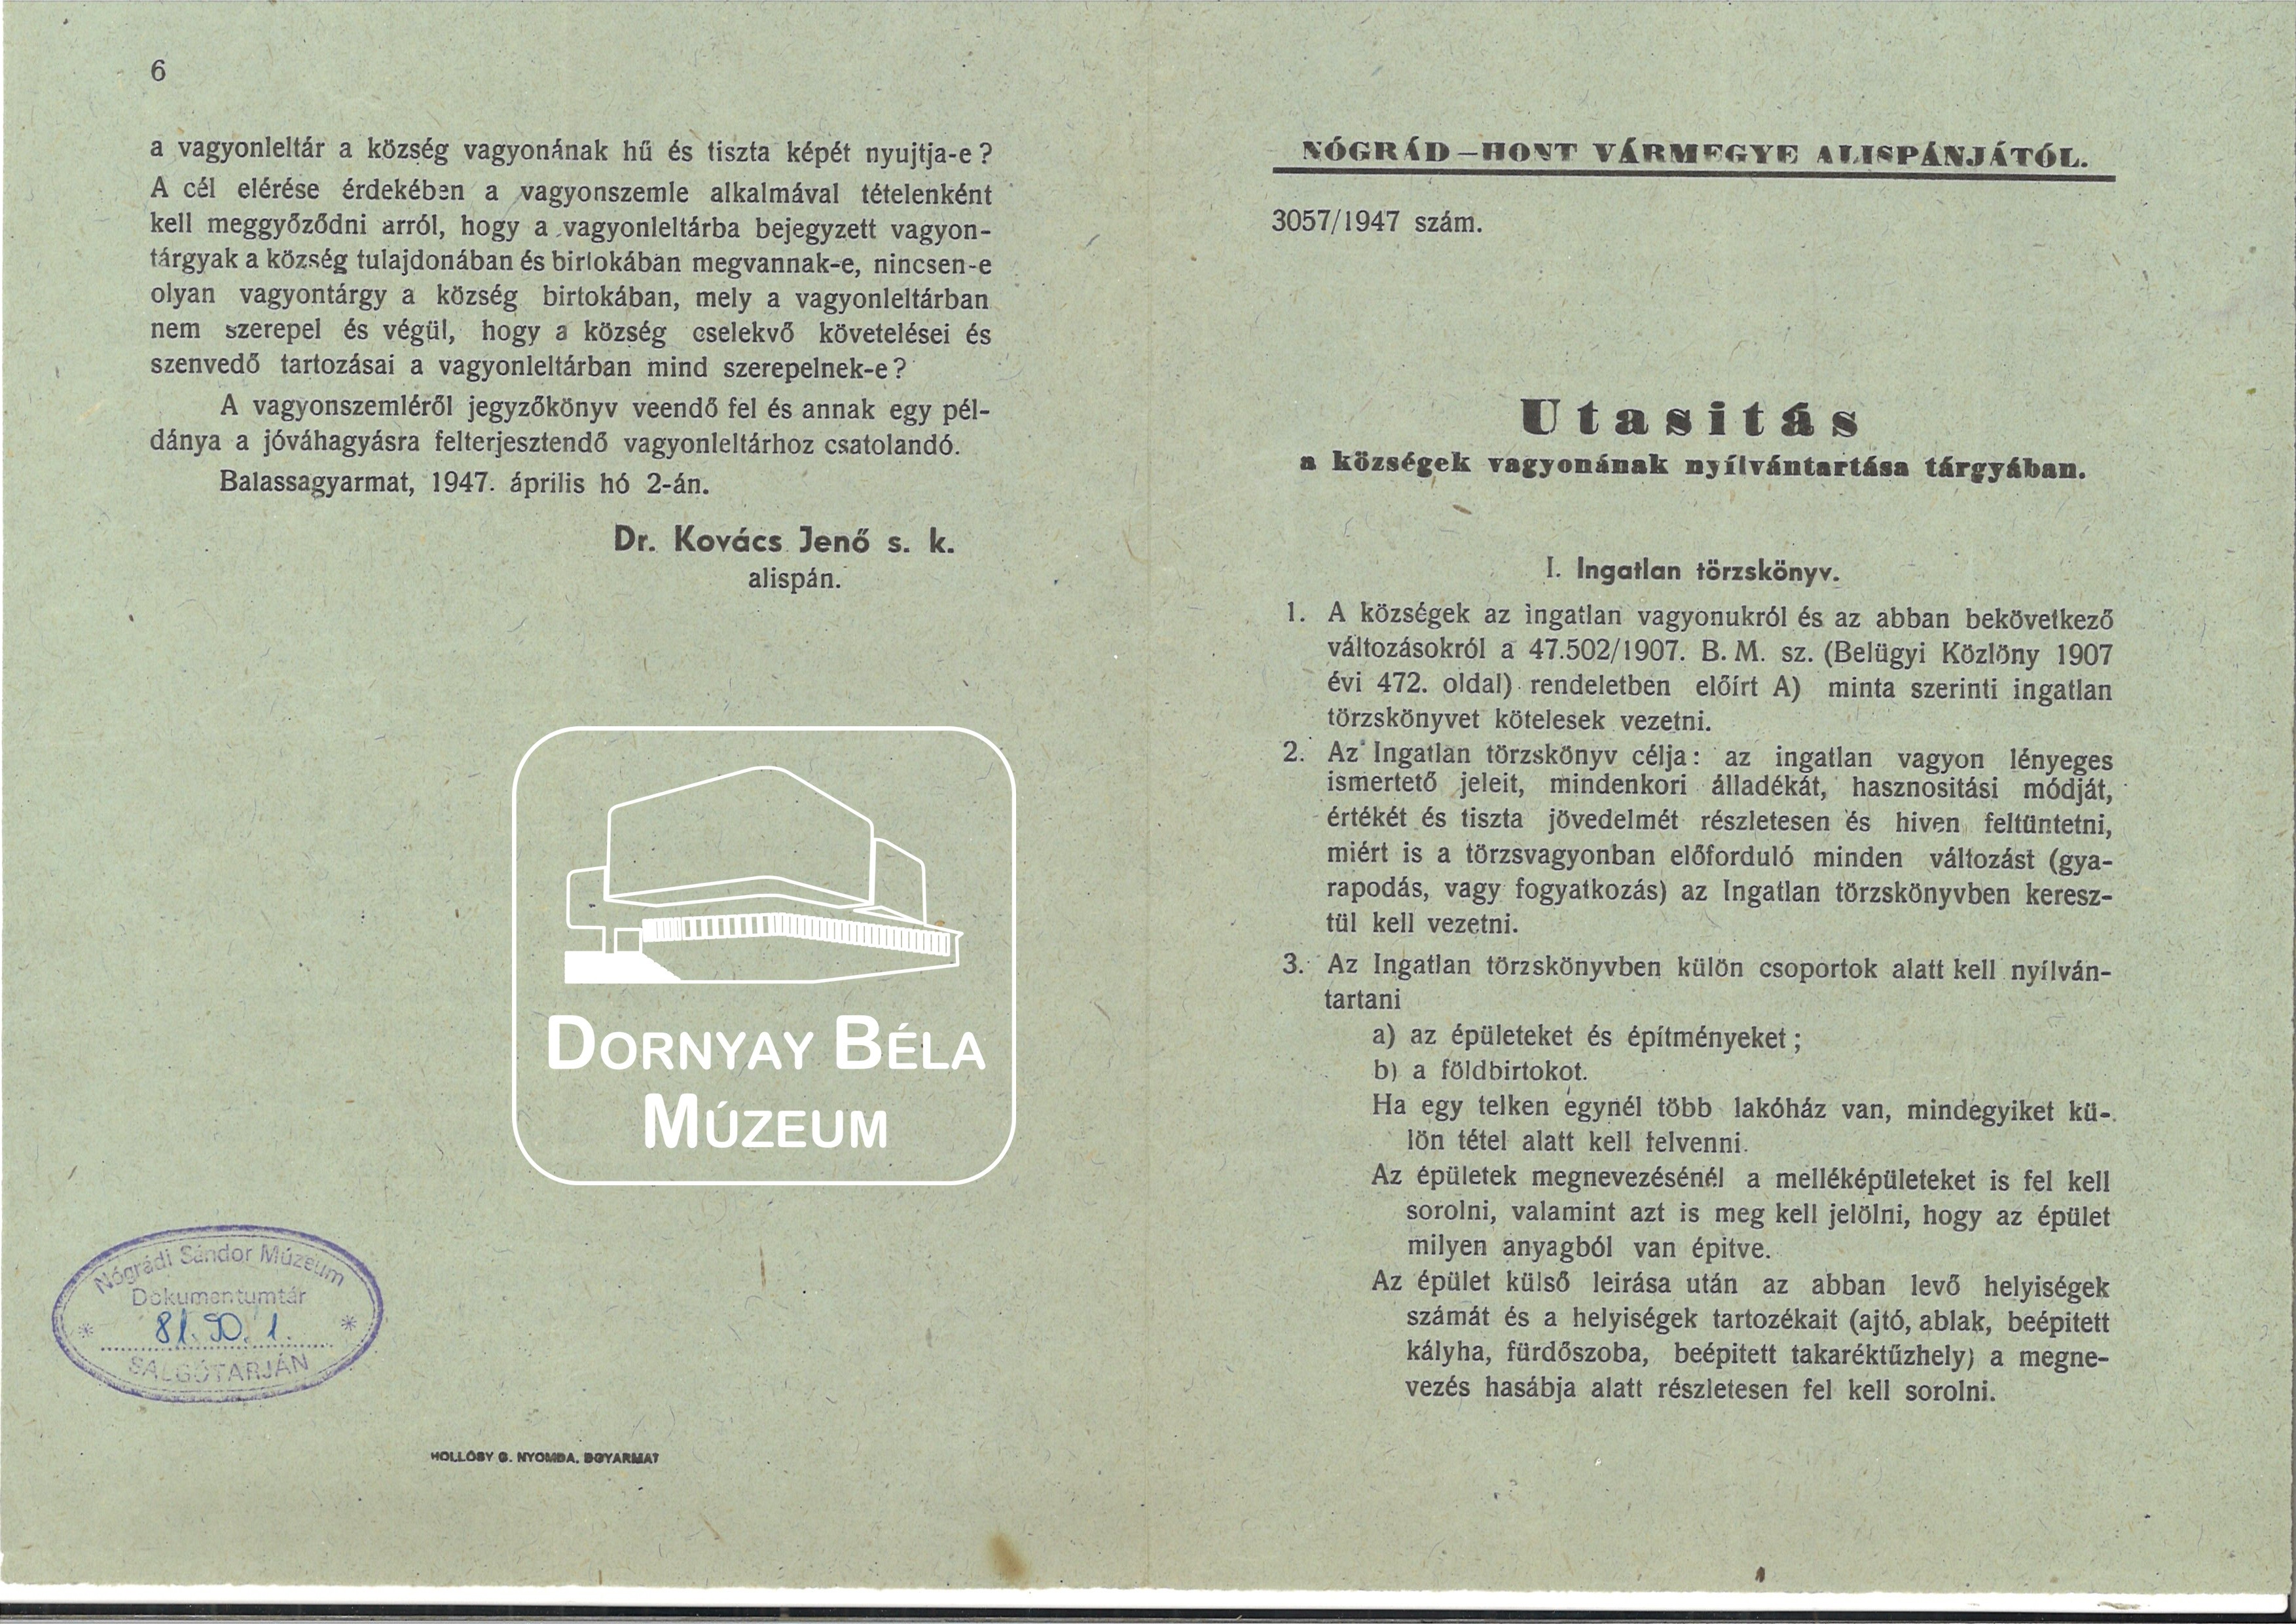 Utasítás a községek vagyonának nyilvántartása tárgyában (Dornyay Béla Múzeum, Salgótarján CC BY-NC-SA)